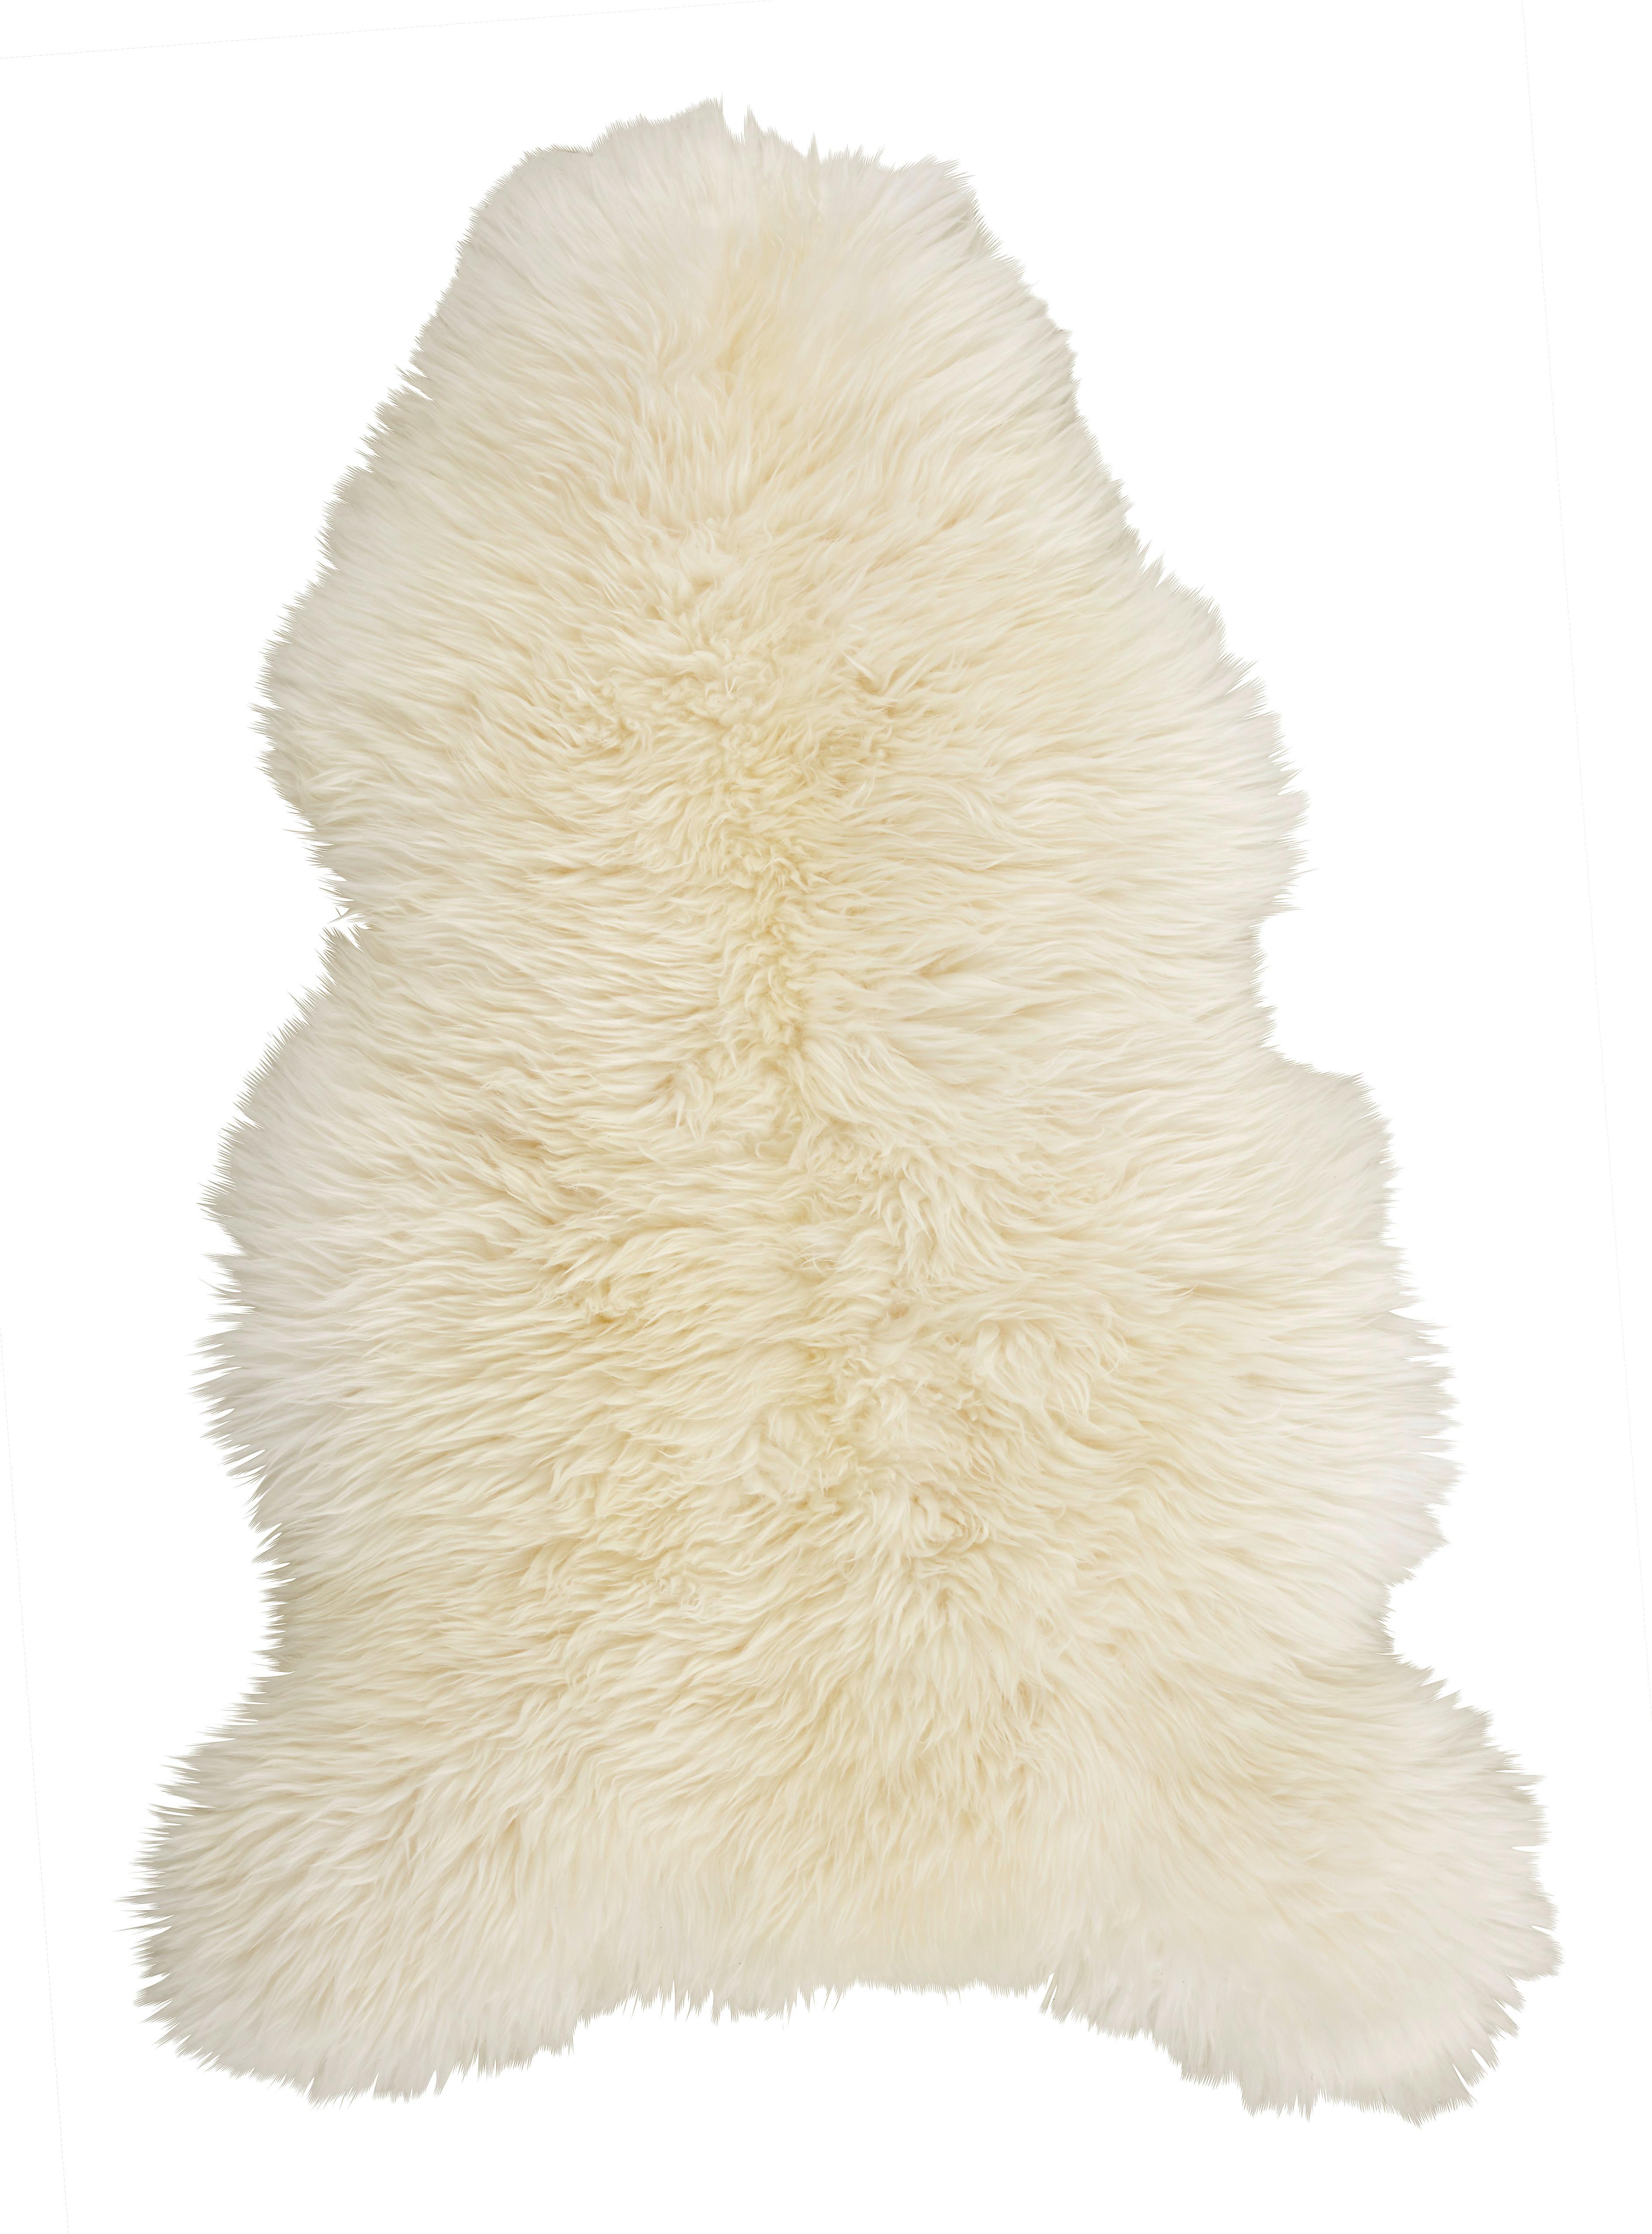 Ovčí Kožešina Jenny, 90-105/60cm, Bílá - bílá, kožešina (90-105/60cm) - Modern Living